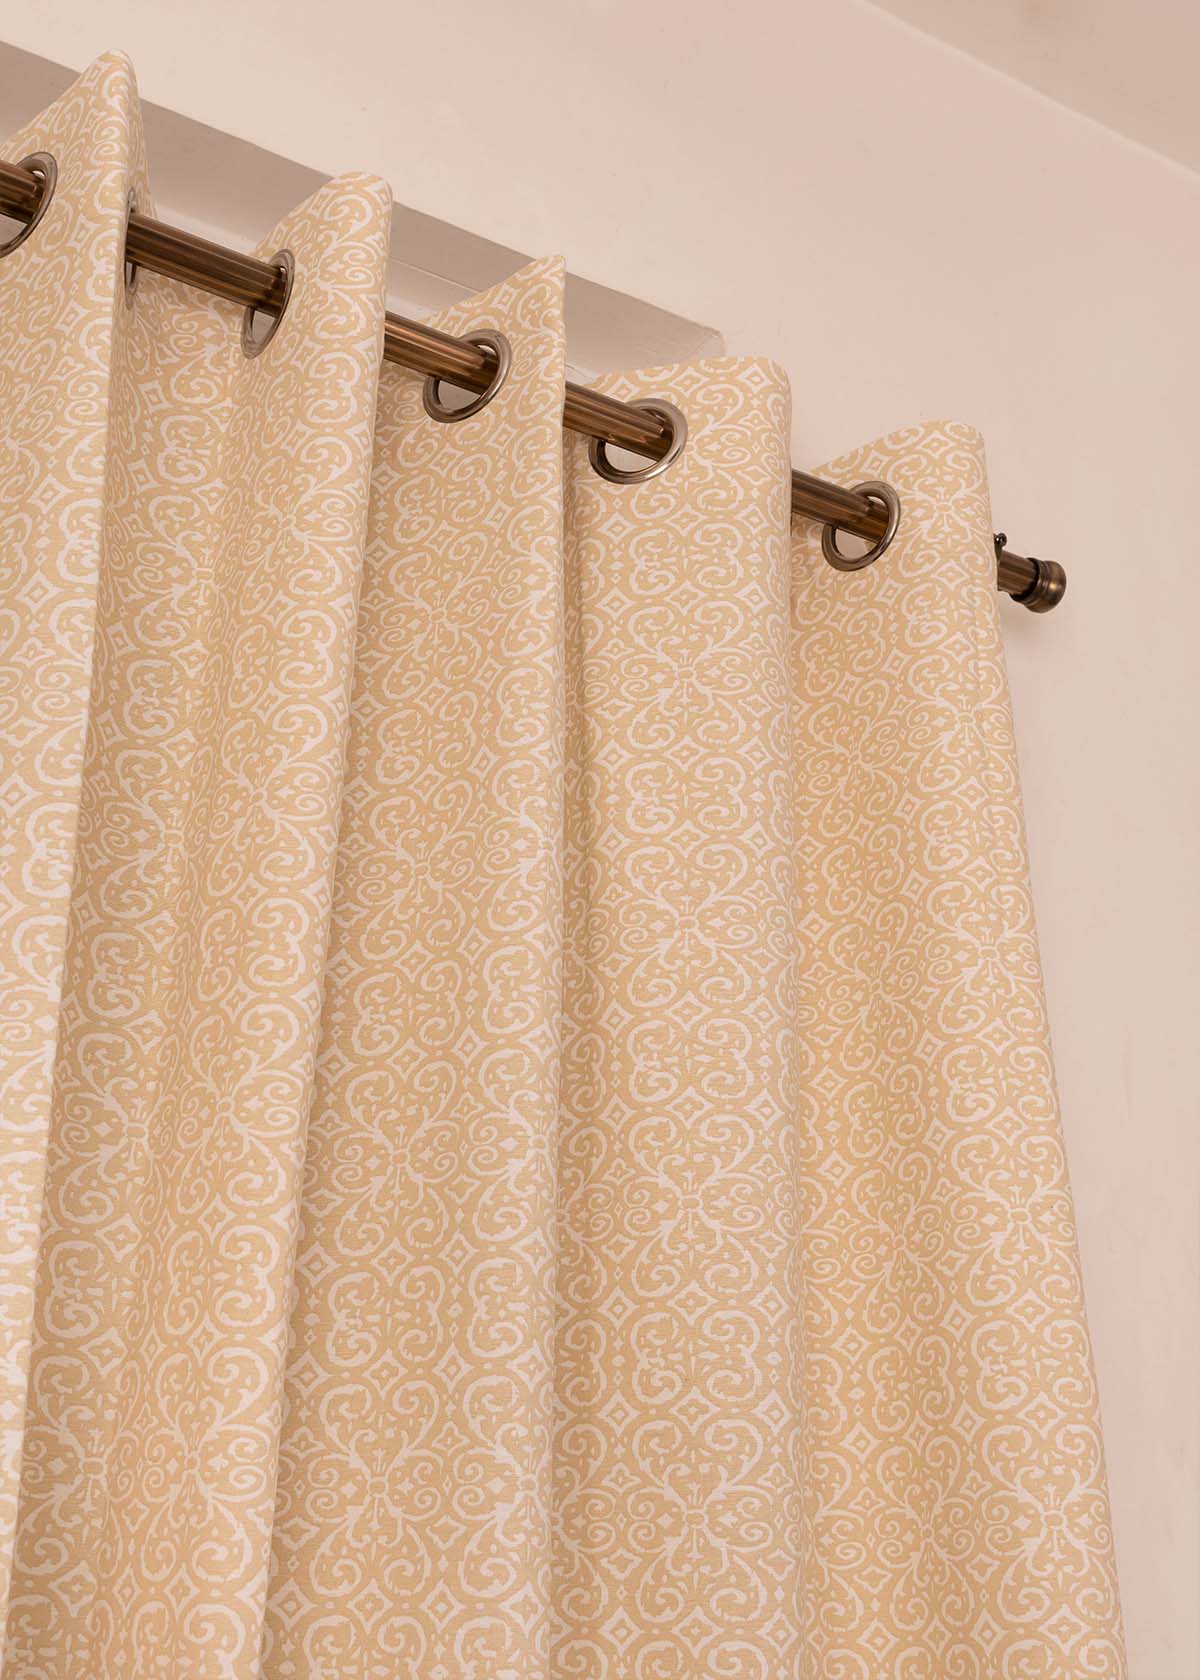 Antique Rose 100% Customizable Cotton minimal curtain for living room - Room darkening - Cream